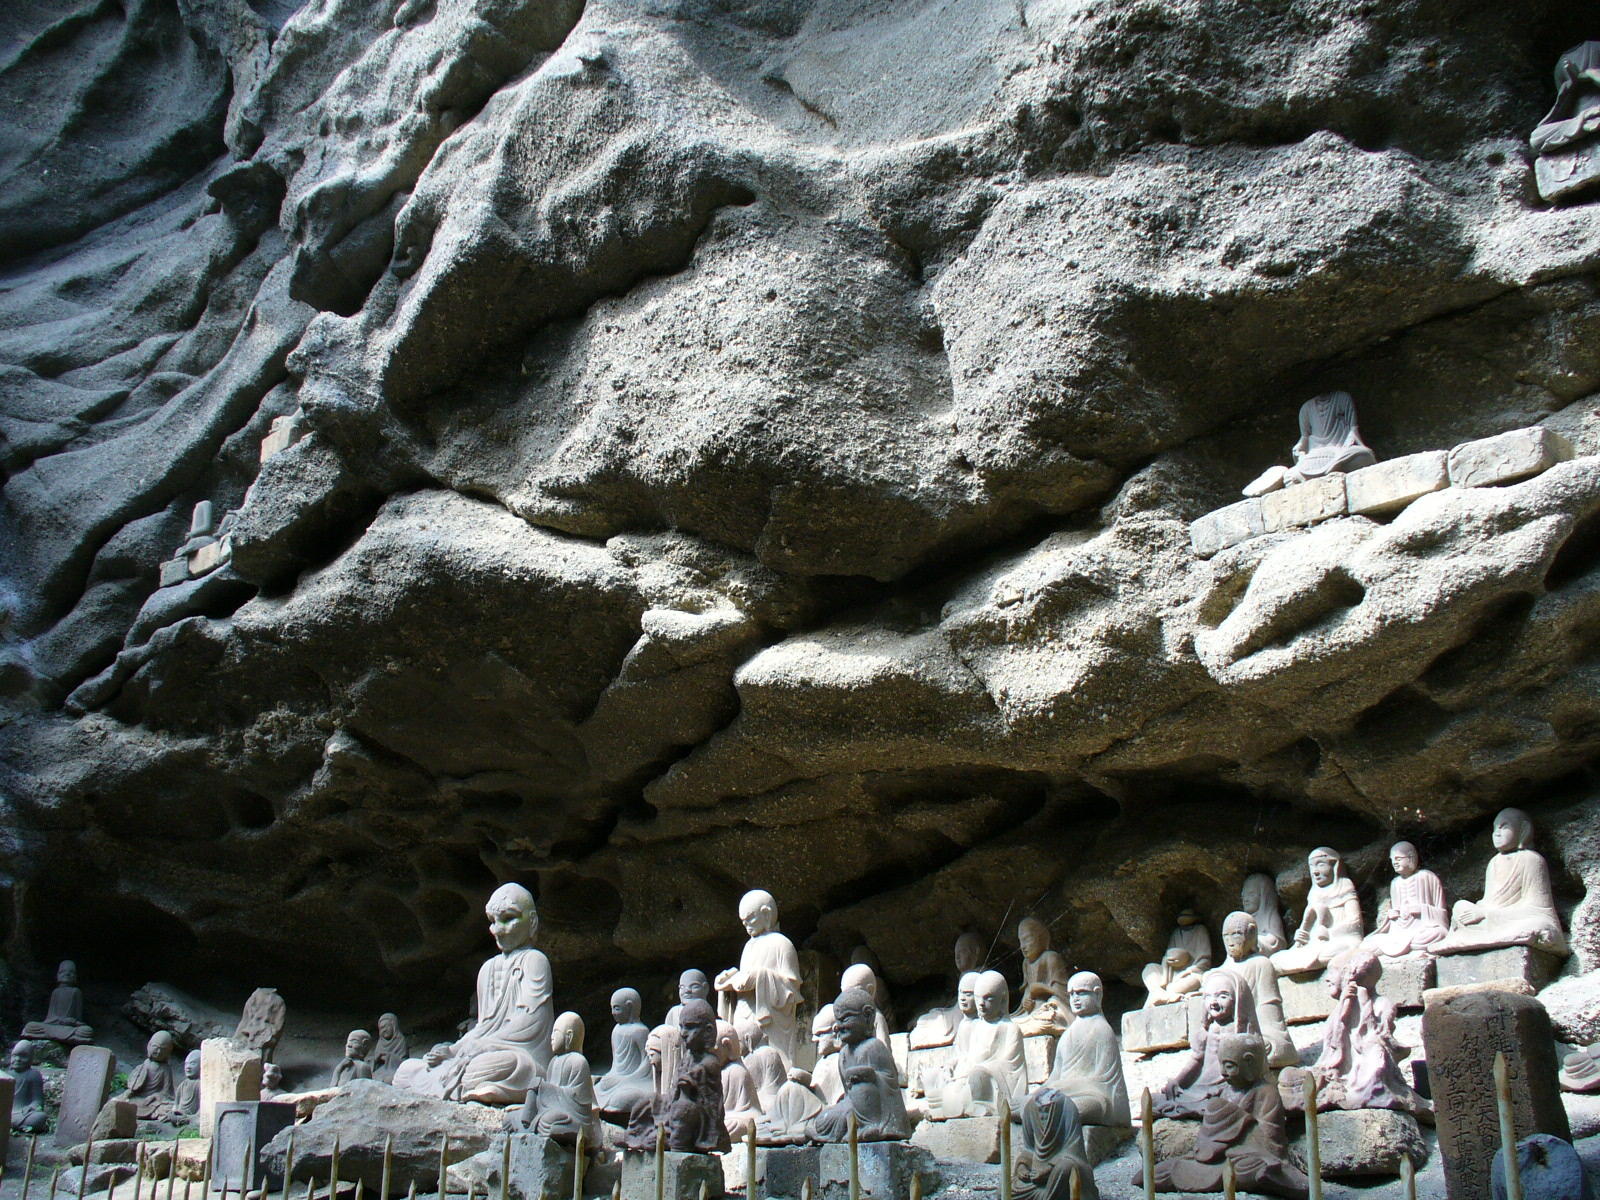 日本寺境内にある「千五百羅漢石像群」